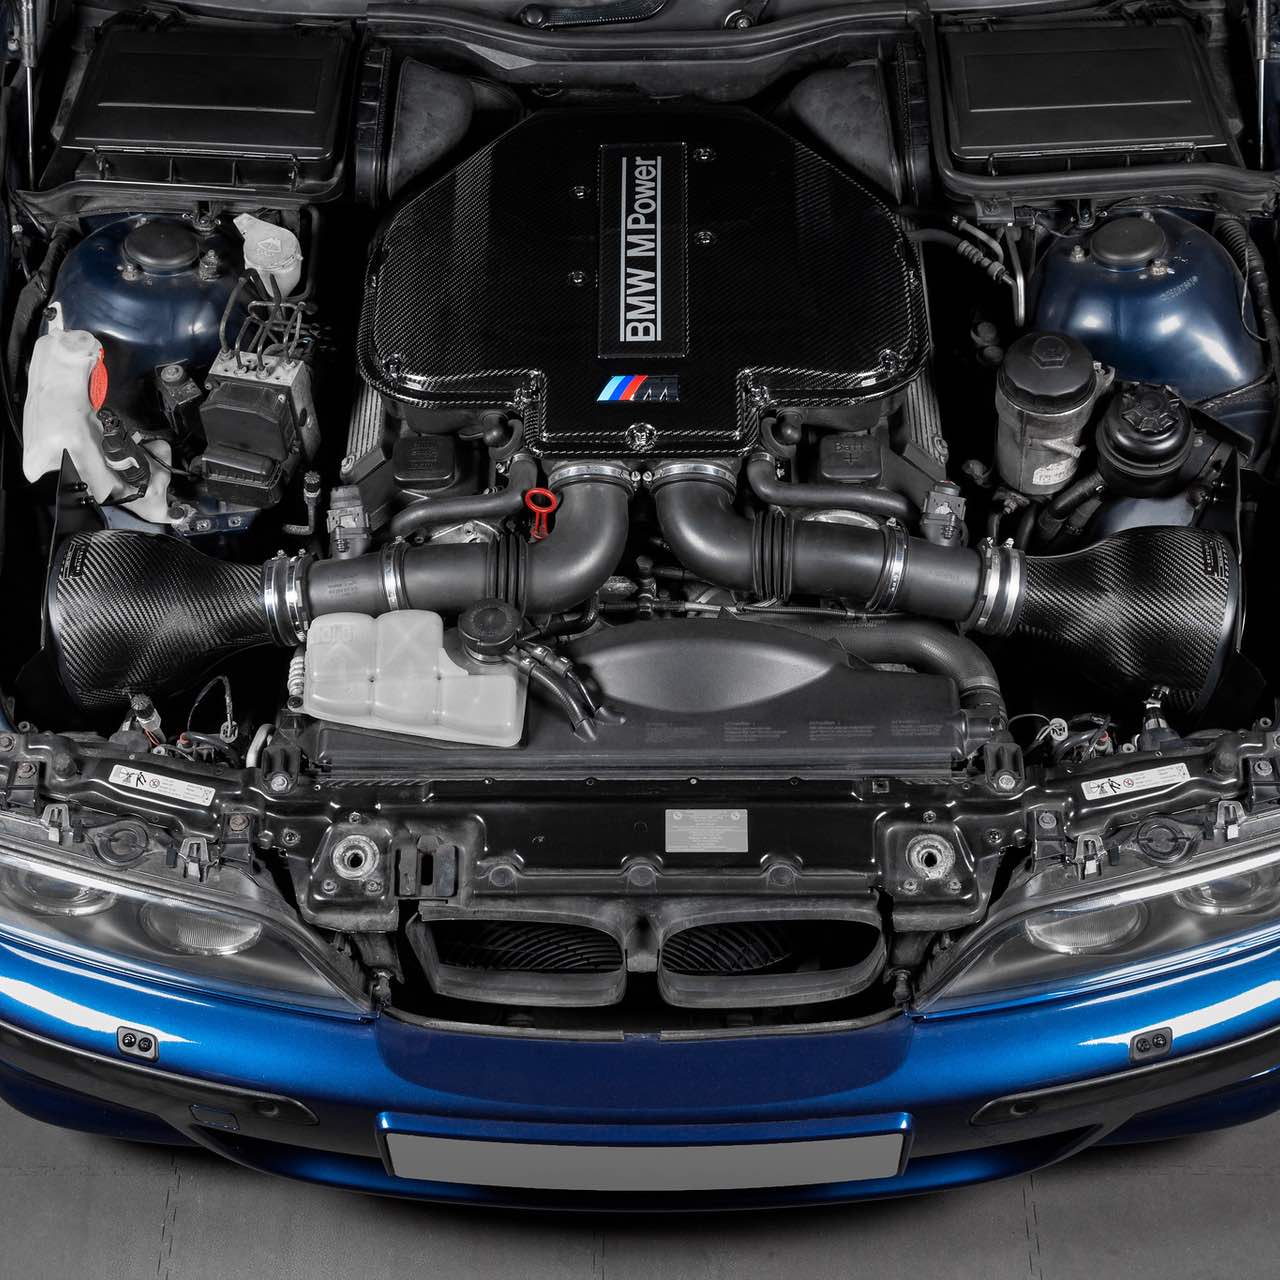 https://burkhart-engineering.com/wp-content/uploads/2023/02/Eventuri-Airboxabdeckung-oben-Kohlefaser-passend-fuer-E39-M5-BMW-S62-2-1280.jpg